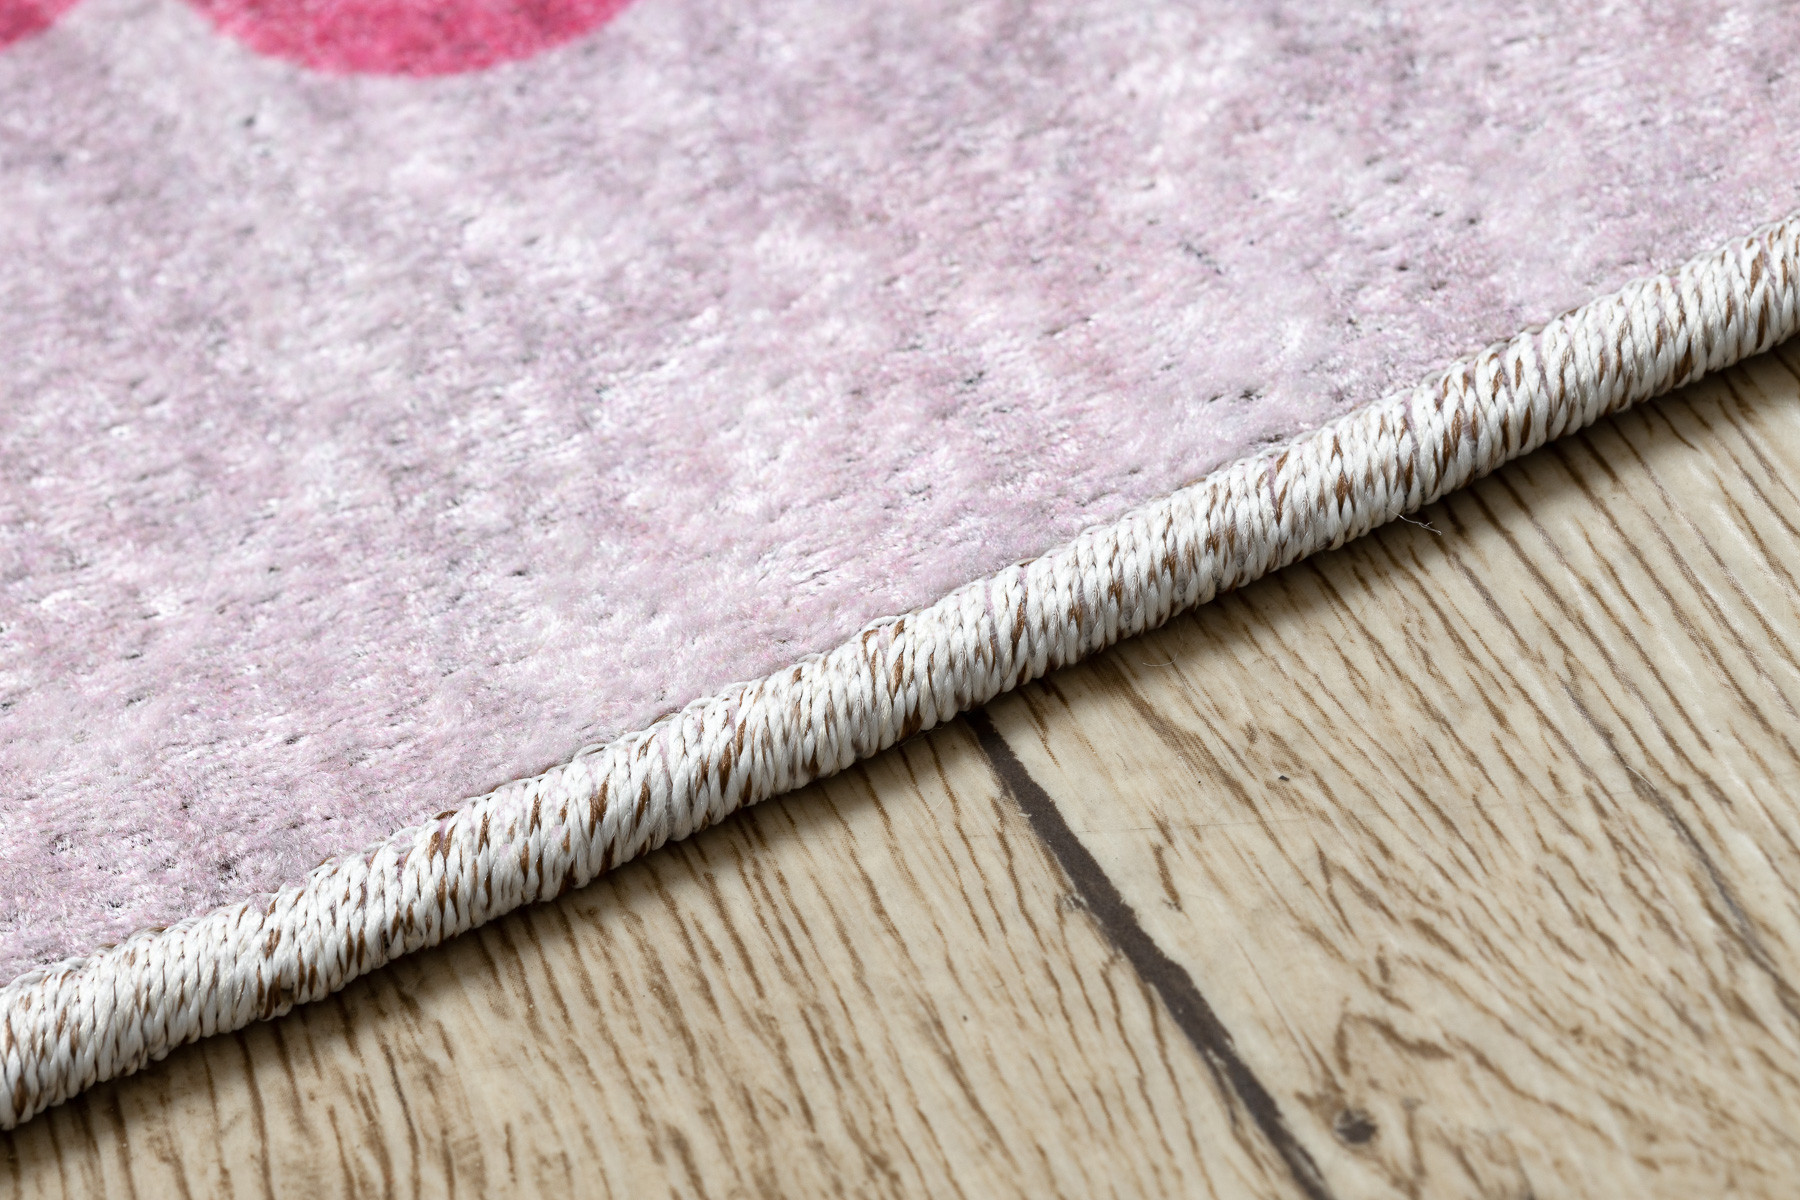 Dětský koberec JUNIOR 51828.802 třídy / baletka, růžový